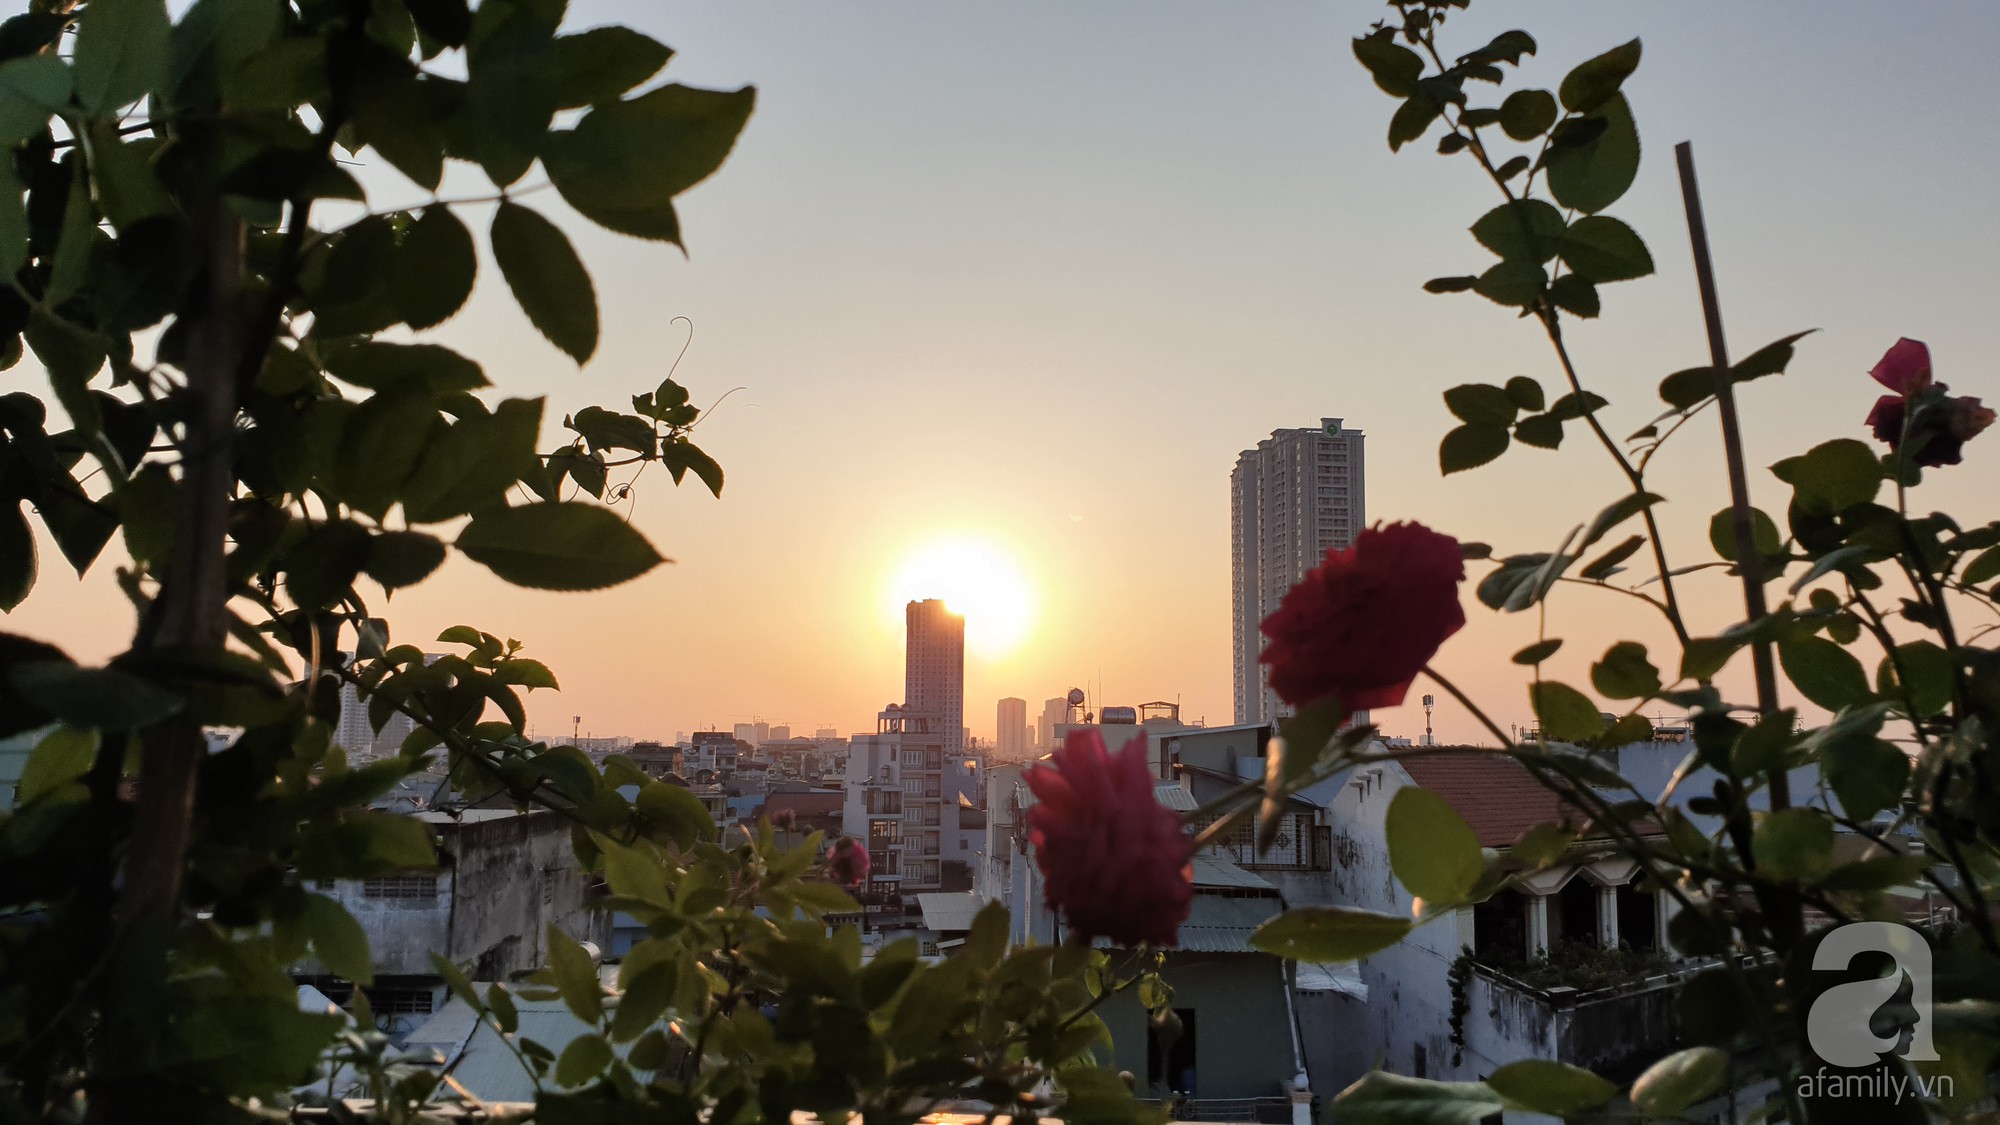 Vườn hồng trên sân thượng rực rỡ sắc màu của chàng trai 8x siêu đảm ở Sài Gòn - Ảnh 2.